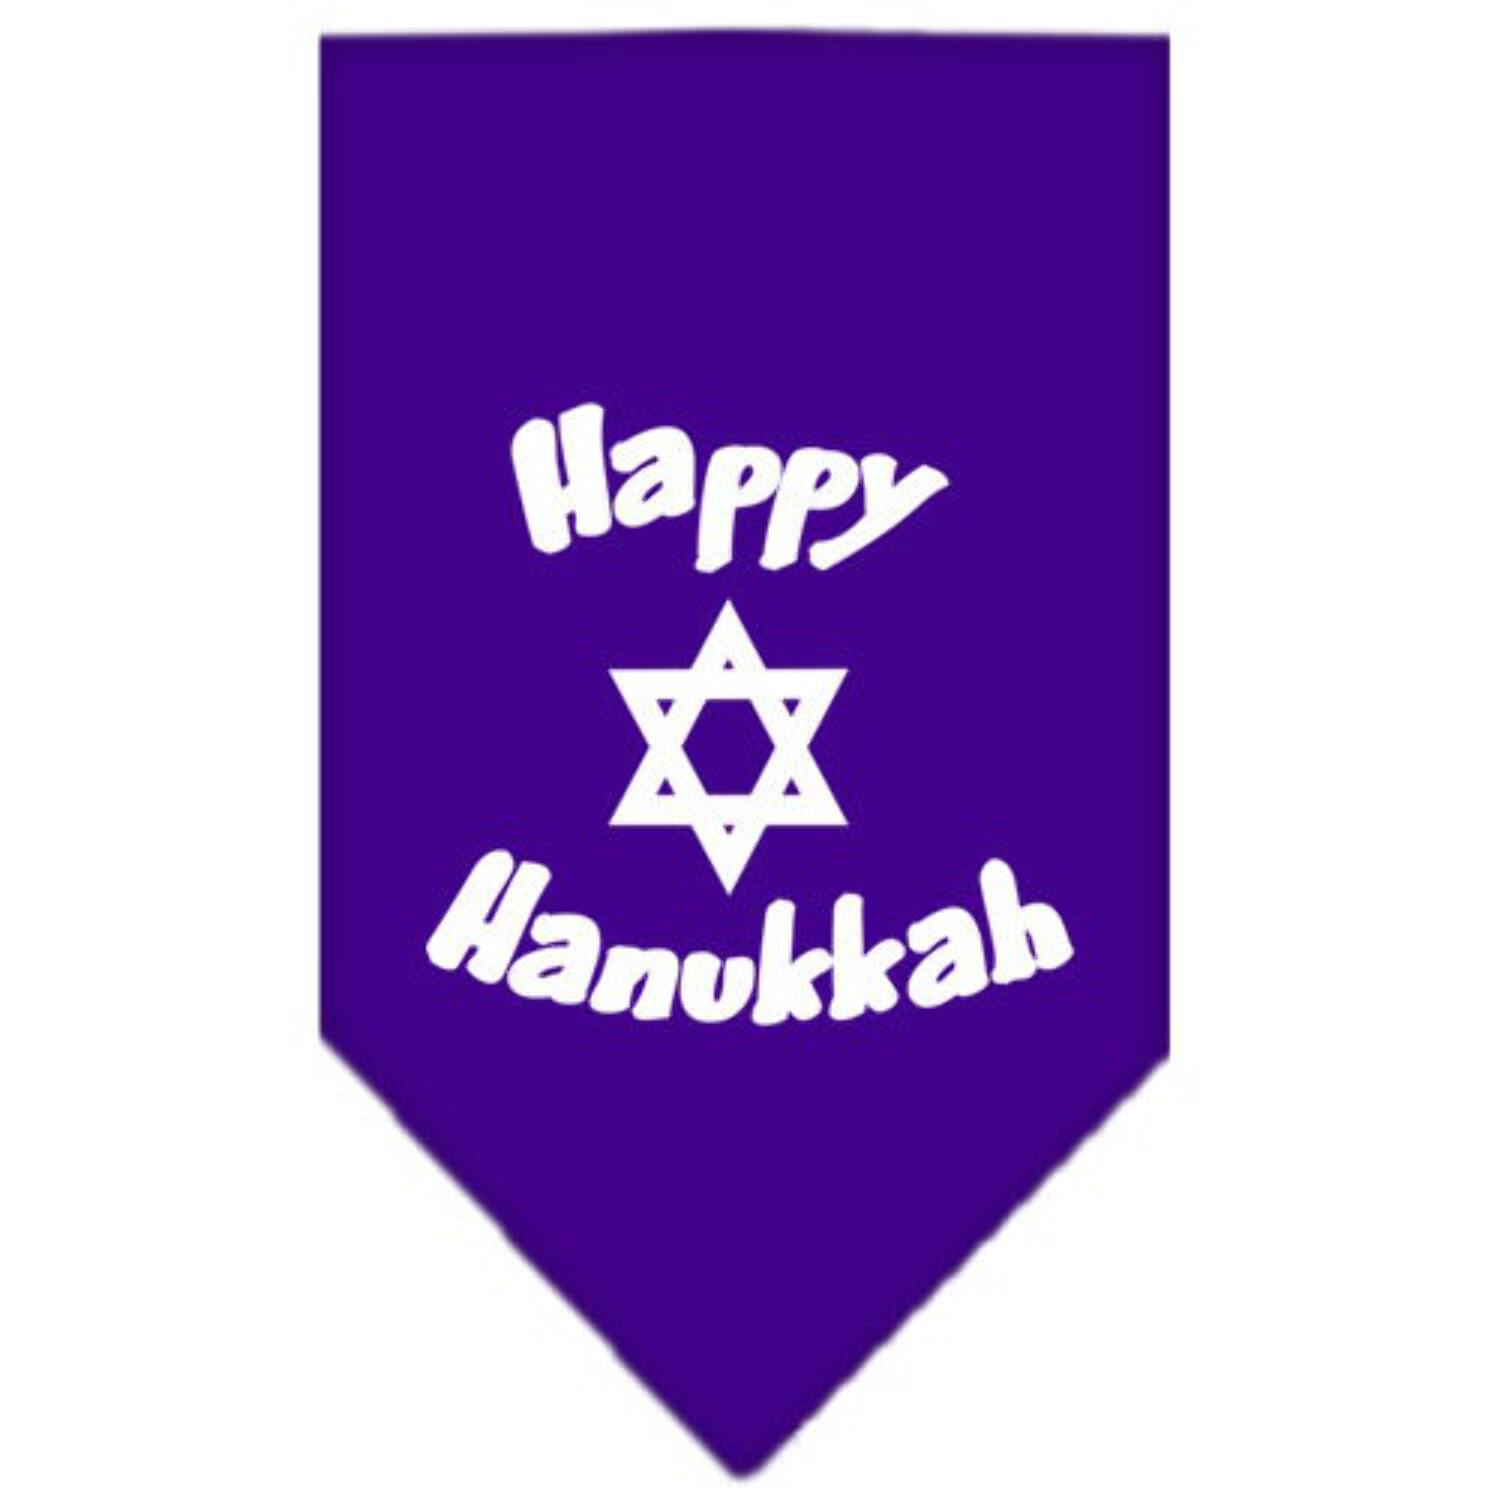 Happy Hanukkah Screen Print Bandana Navy Blue Small - image 4 of 10